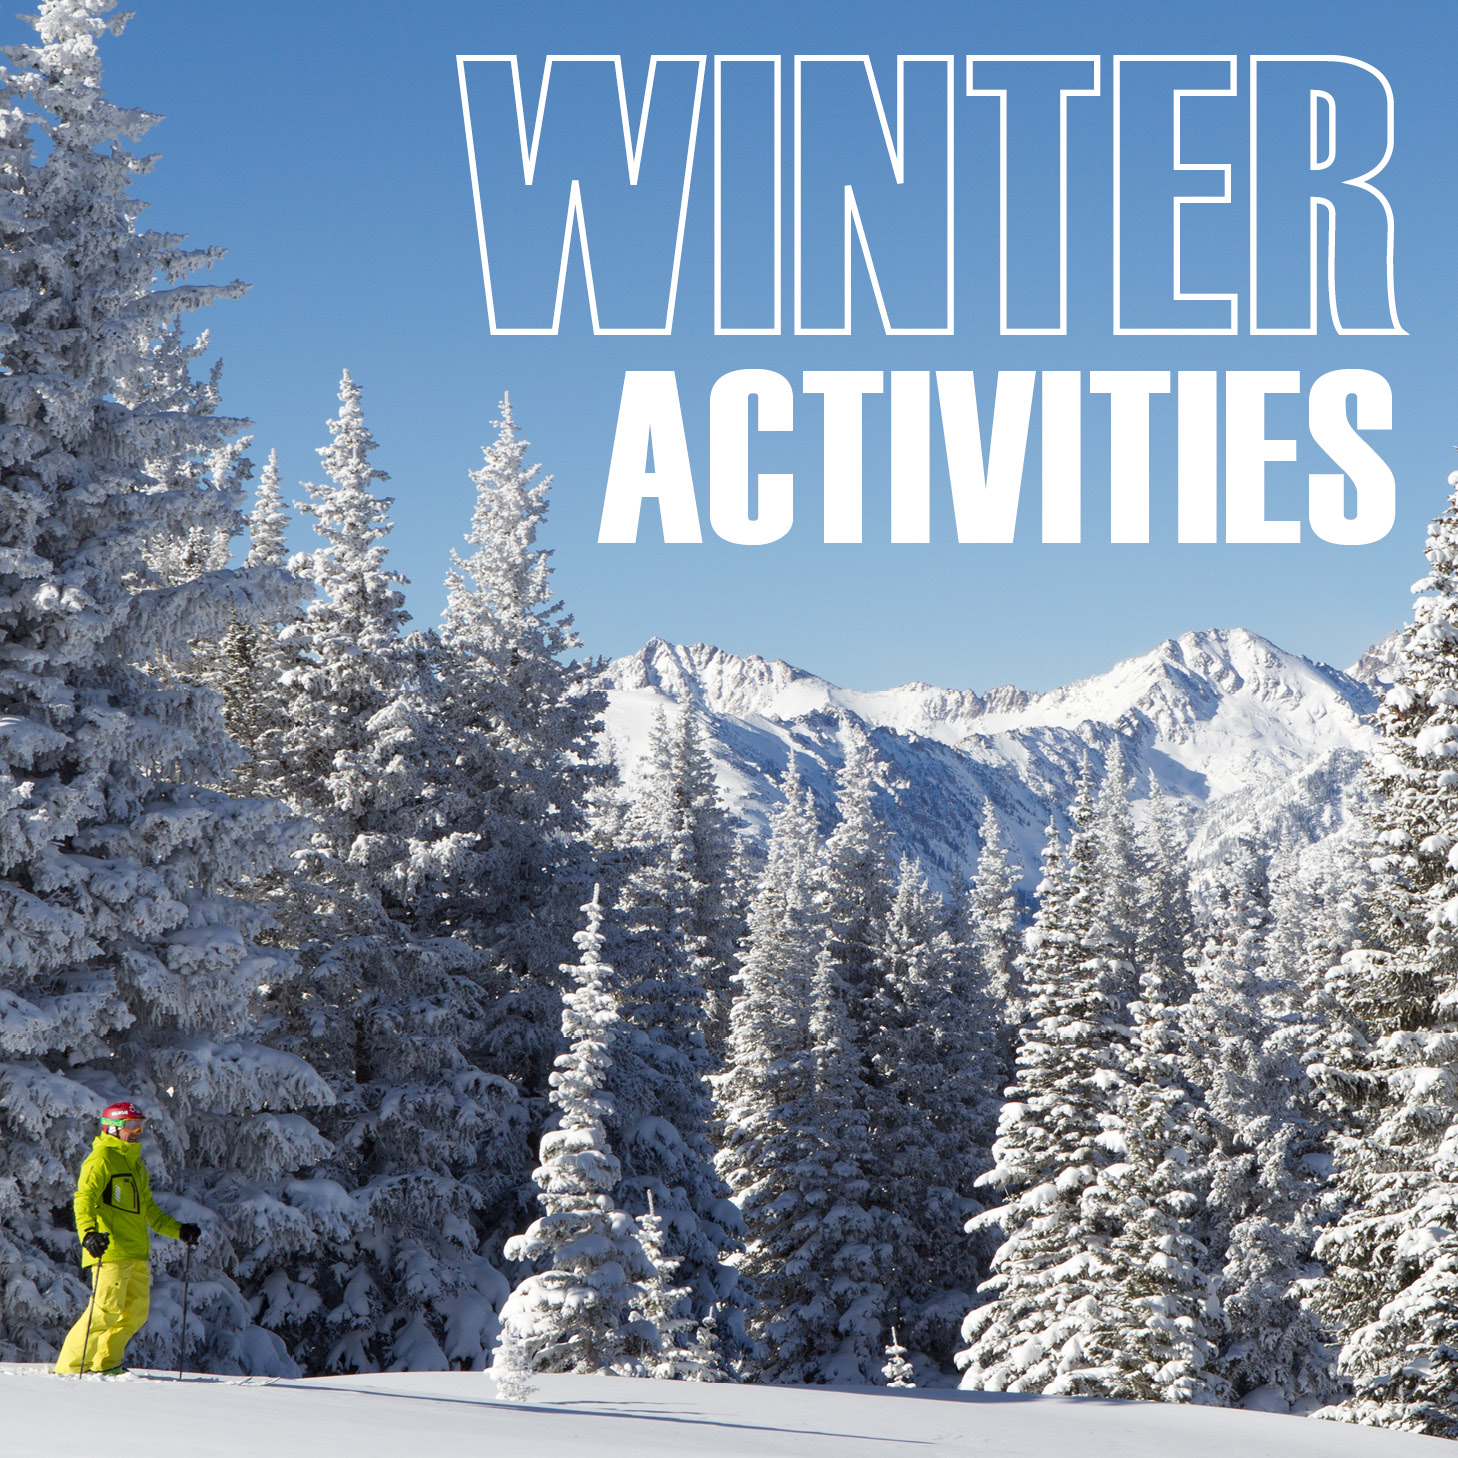 Winter Activities in Vail